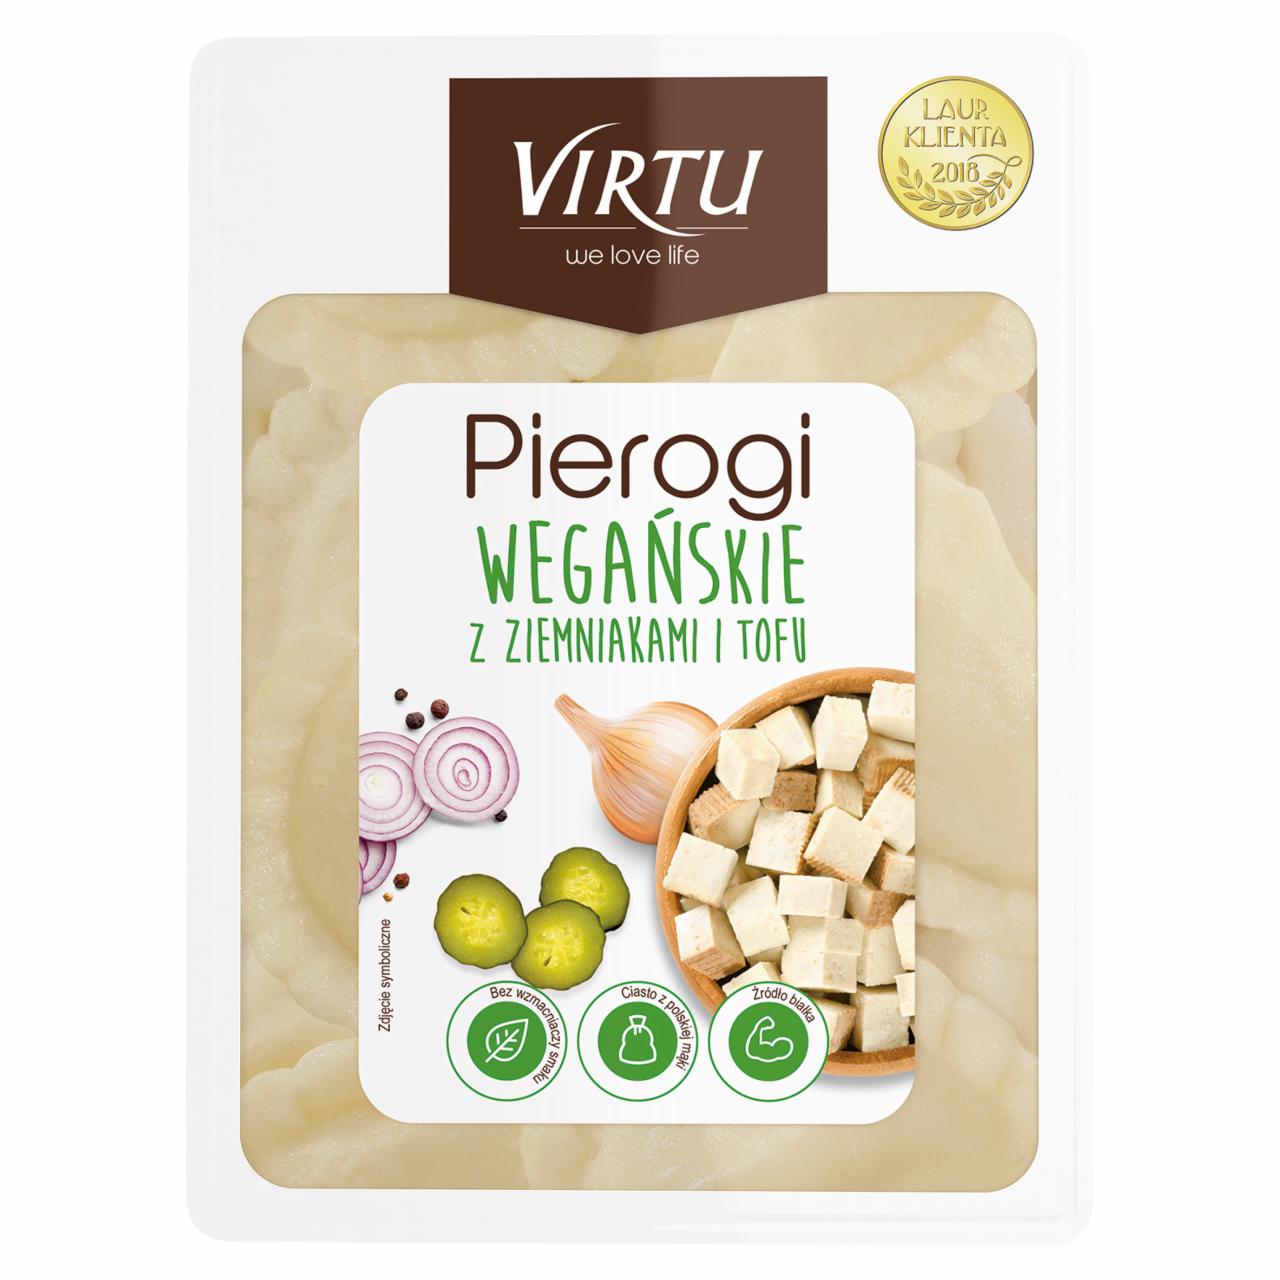 Zdjęcia - Virtu Pierogi wegańskie z ziemniakami i tofu 400 g